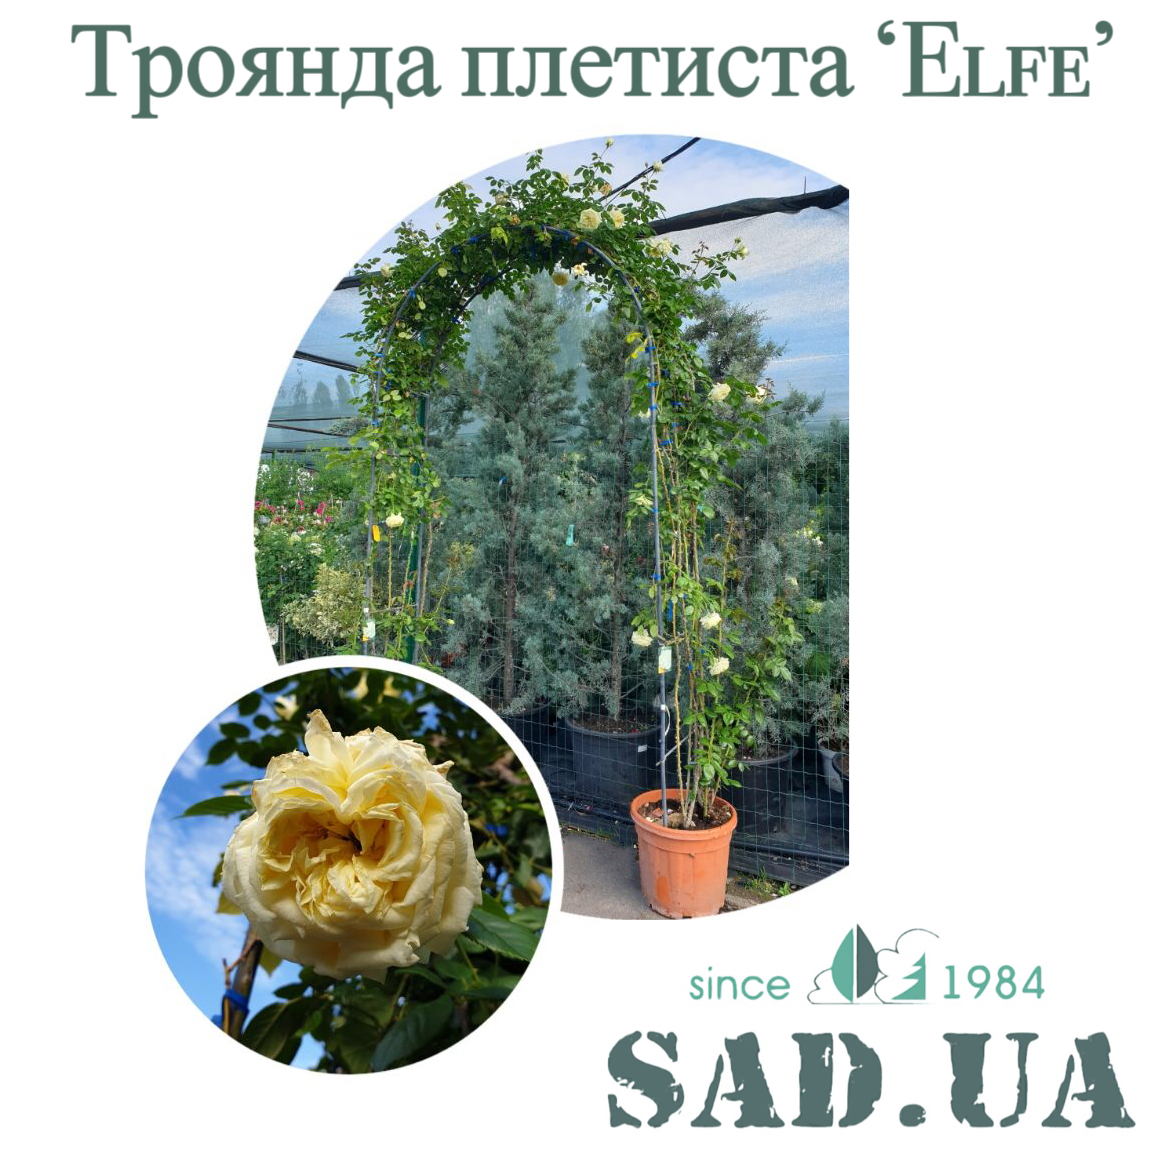 Роза. Плетистая Elfe 2,4 х1,6 м (ф.арка), контейнер 35 л - 0 - SAD.UA 